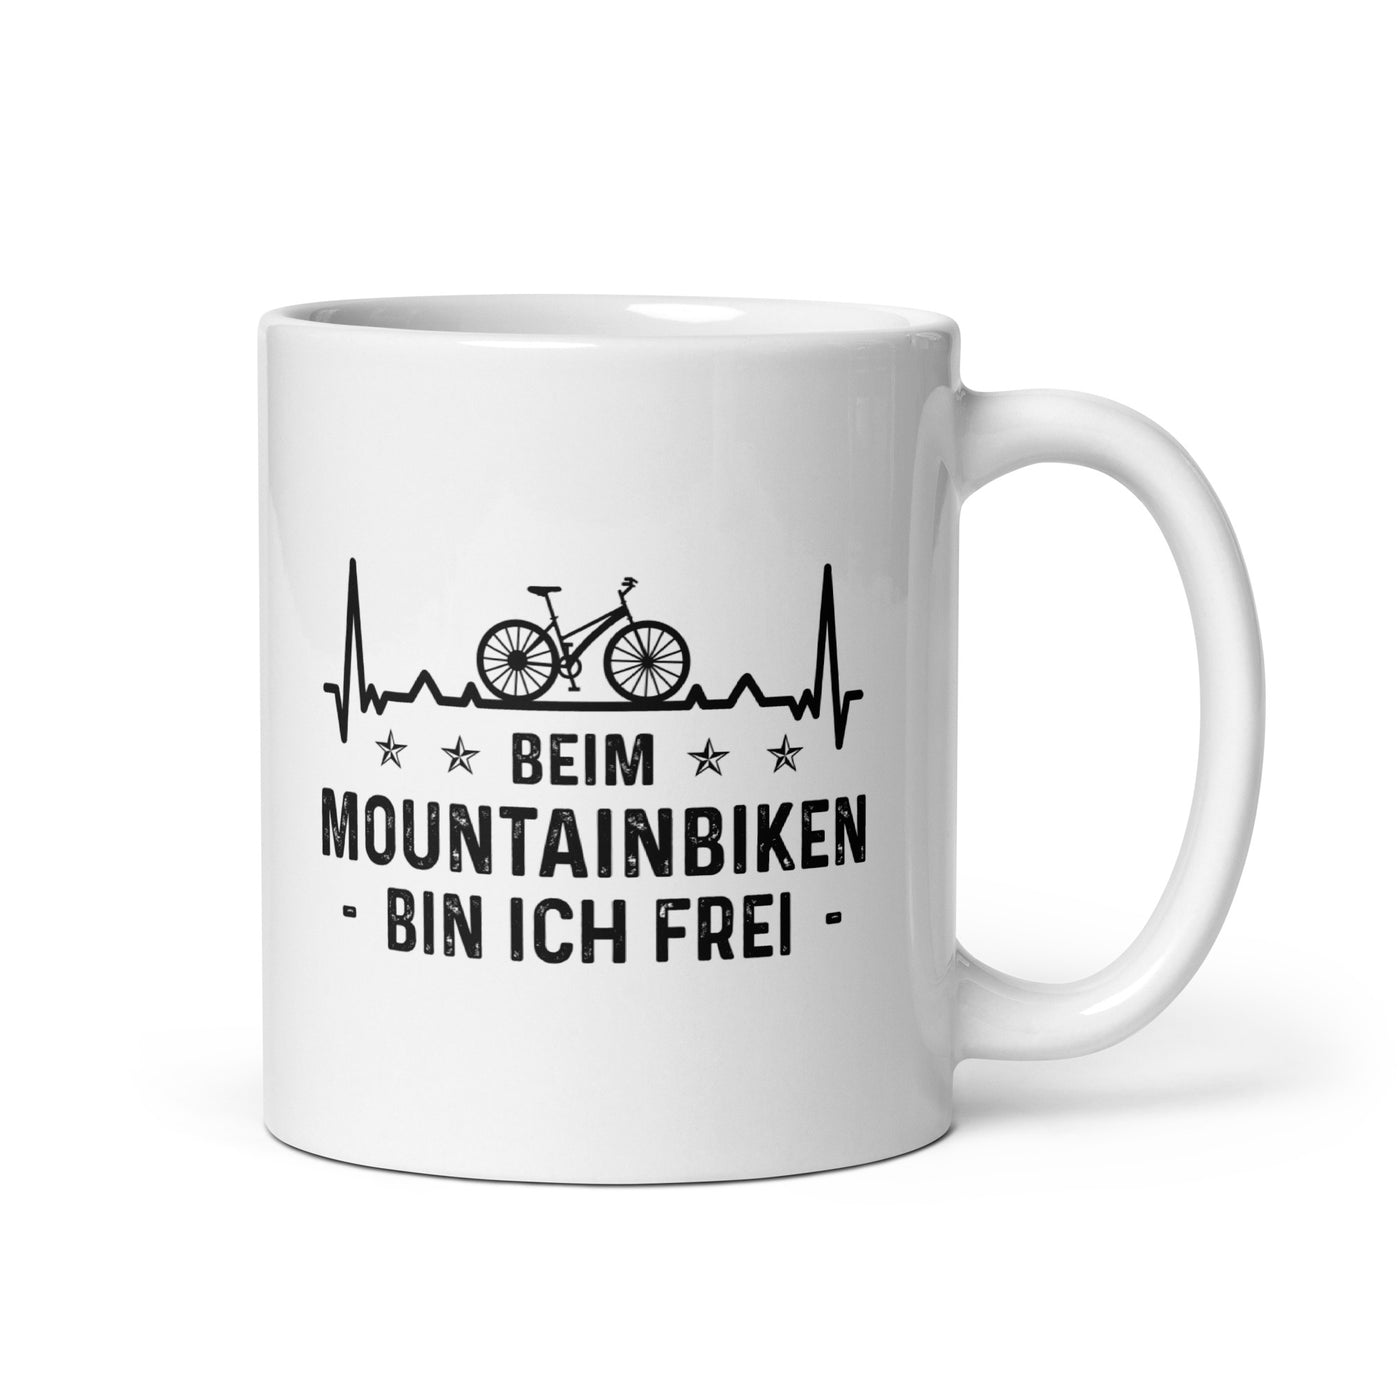 Beim Mountainbiken Bin Ich Frel 1 - Tasse fahrrad